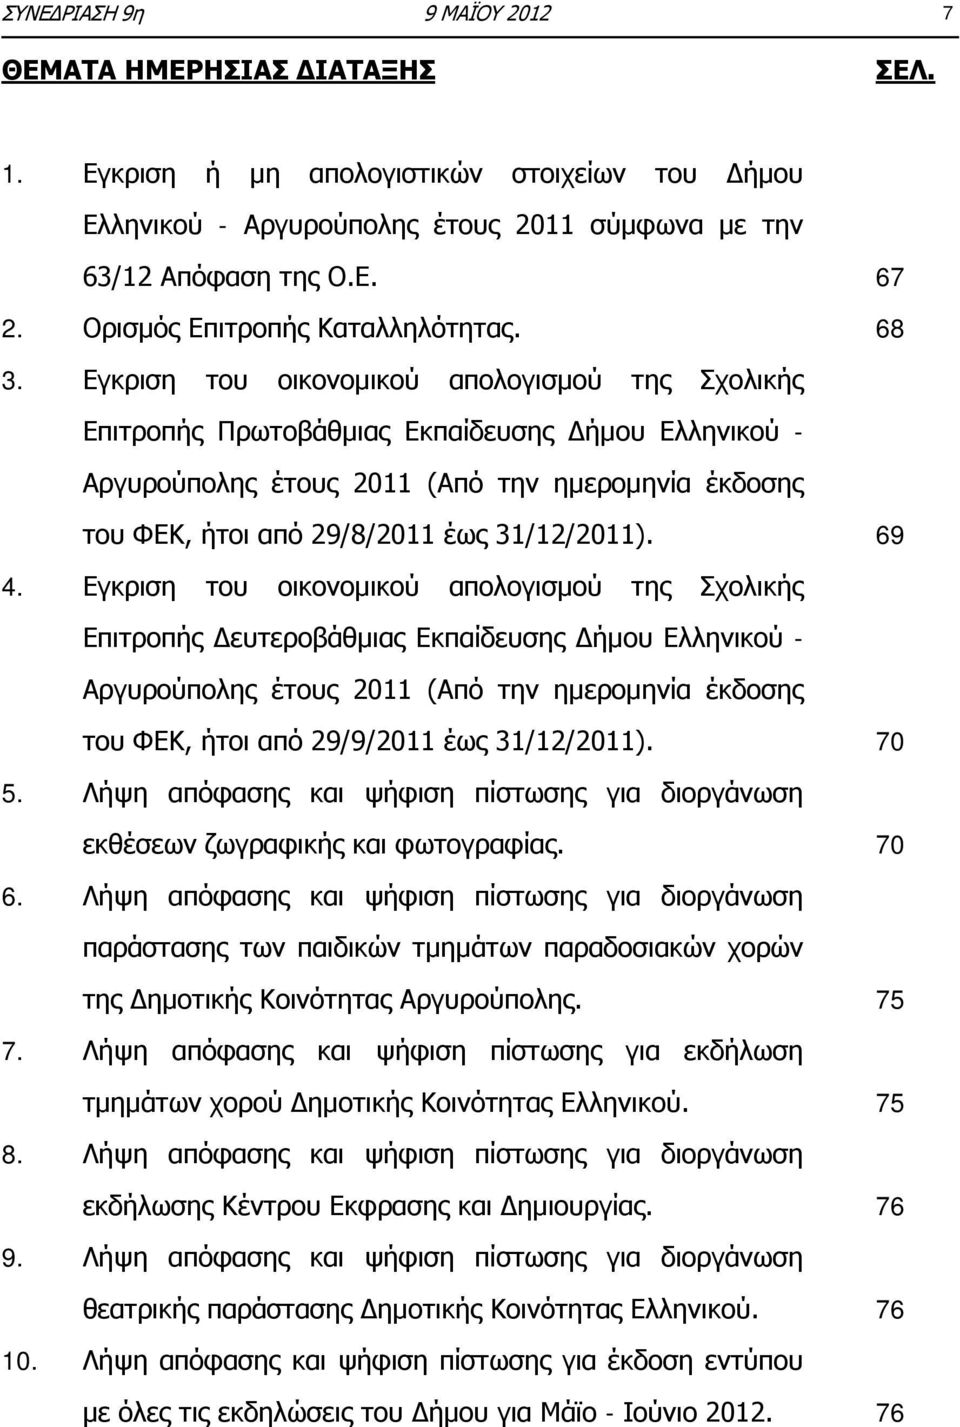 Εγκριση του οικονομικού απολογισμού της Σχολικής Επιτροπής Πρωτοβάθμιας Εκπαίδευσης Δήμου Ελληνικού - Αργυρούπολης έτους 2011 (Από την ημερομηνία έκδοσης του ΦΕΚ, ήτοι από 29/8/2011 έως 31/12/2011).